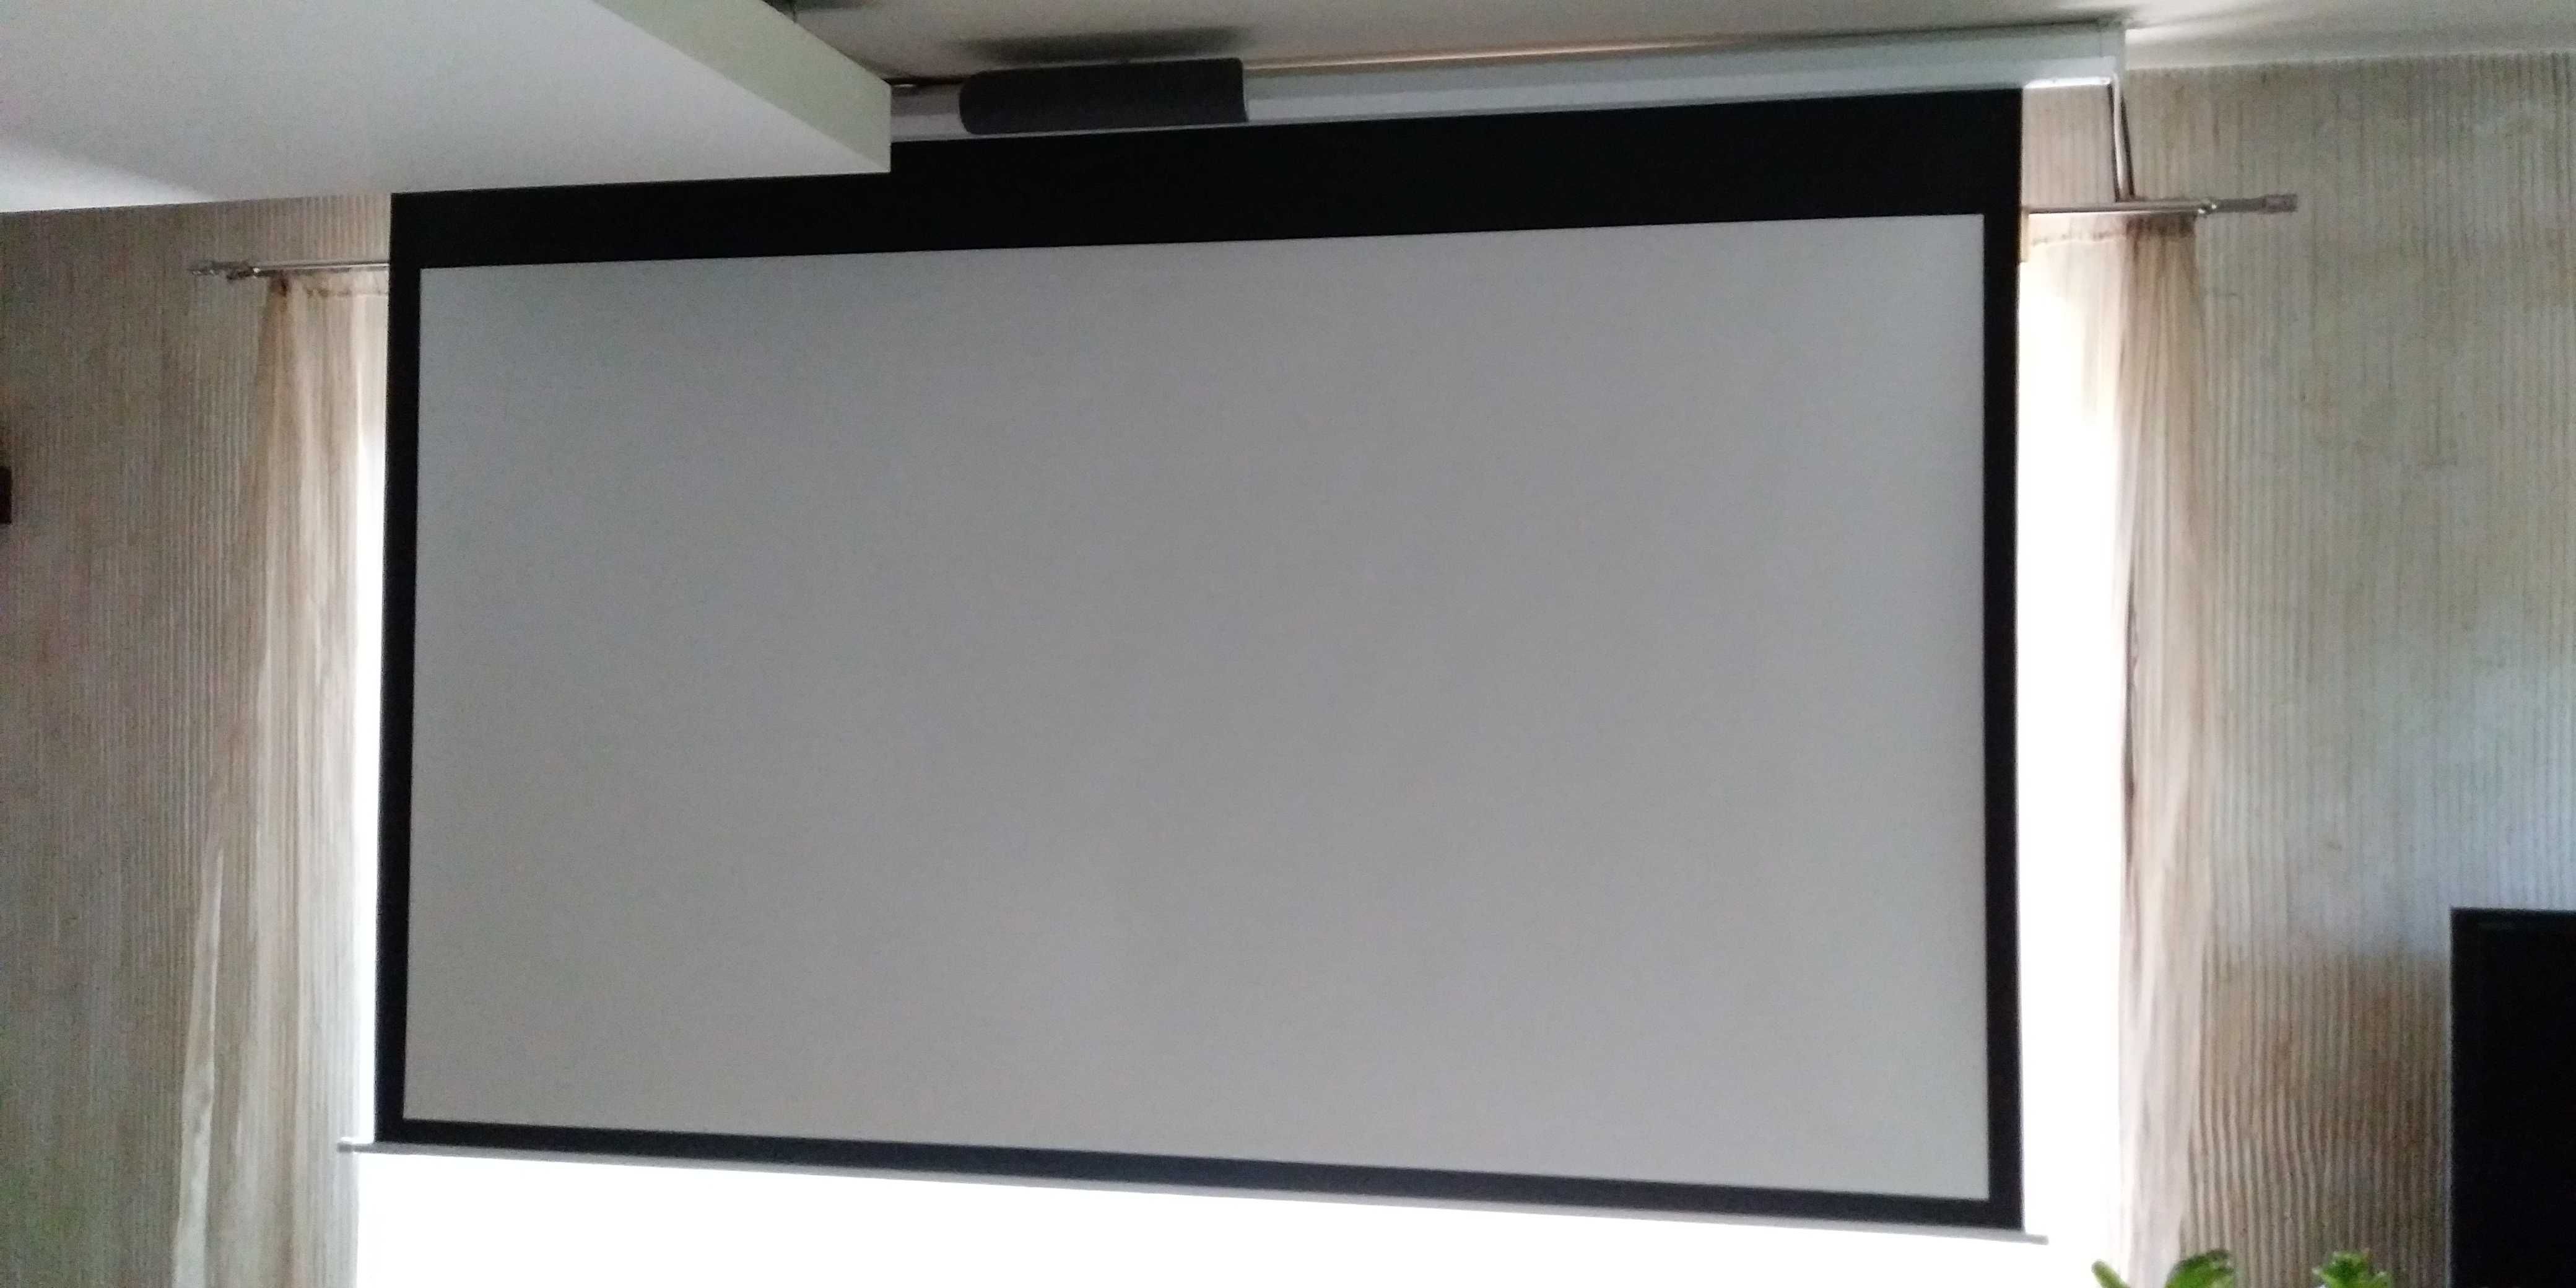 projektor JVC DLA-HD1 i ekran 110 cali z napędem